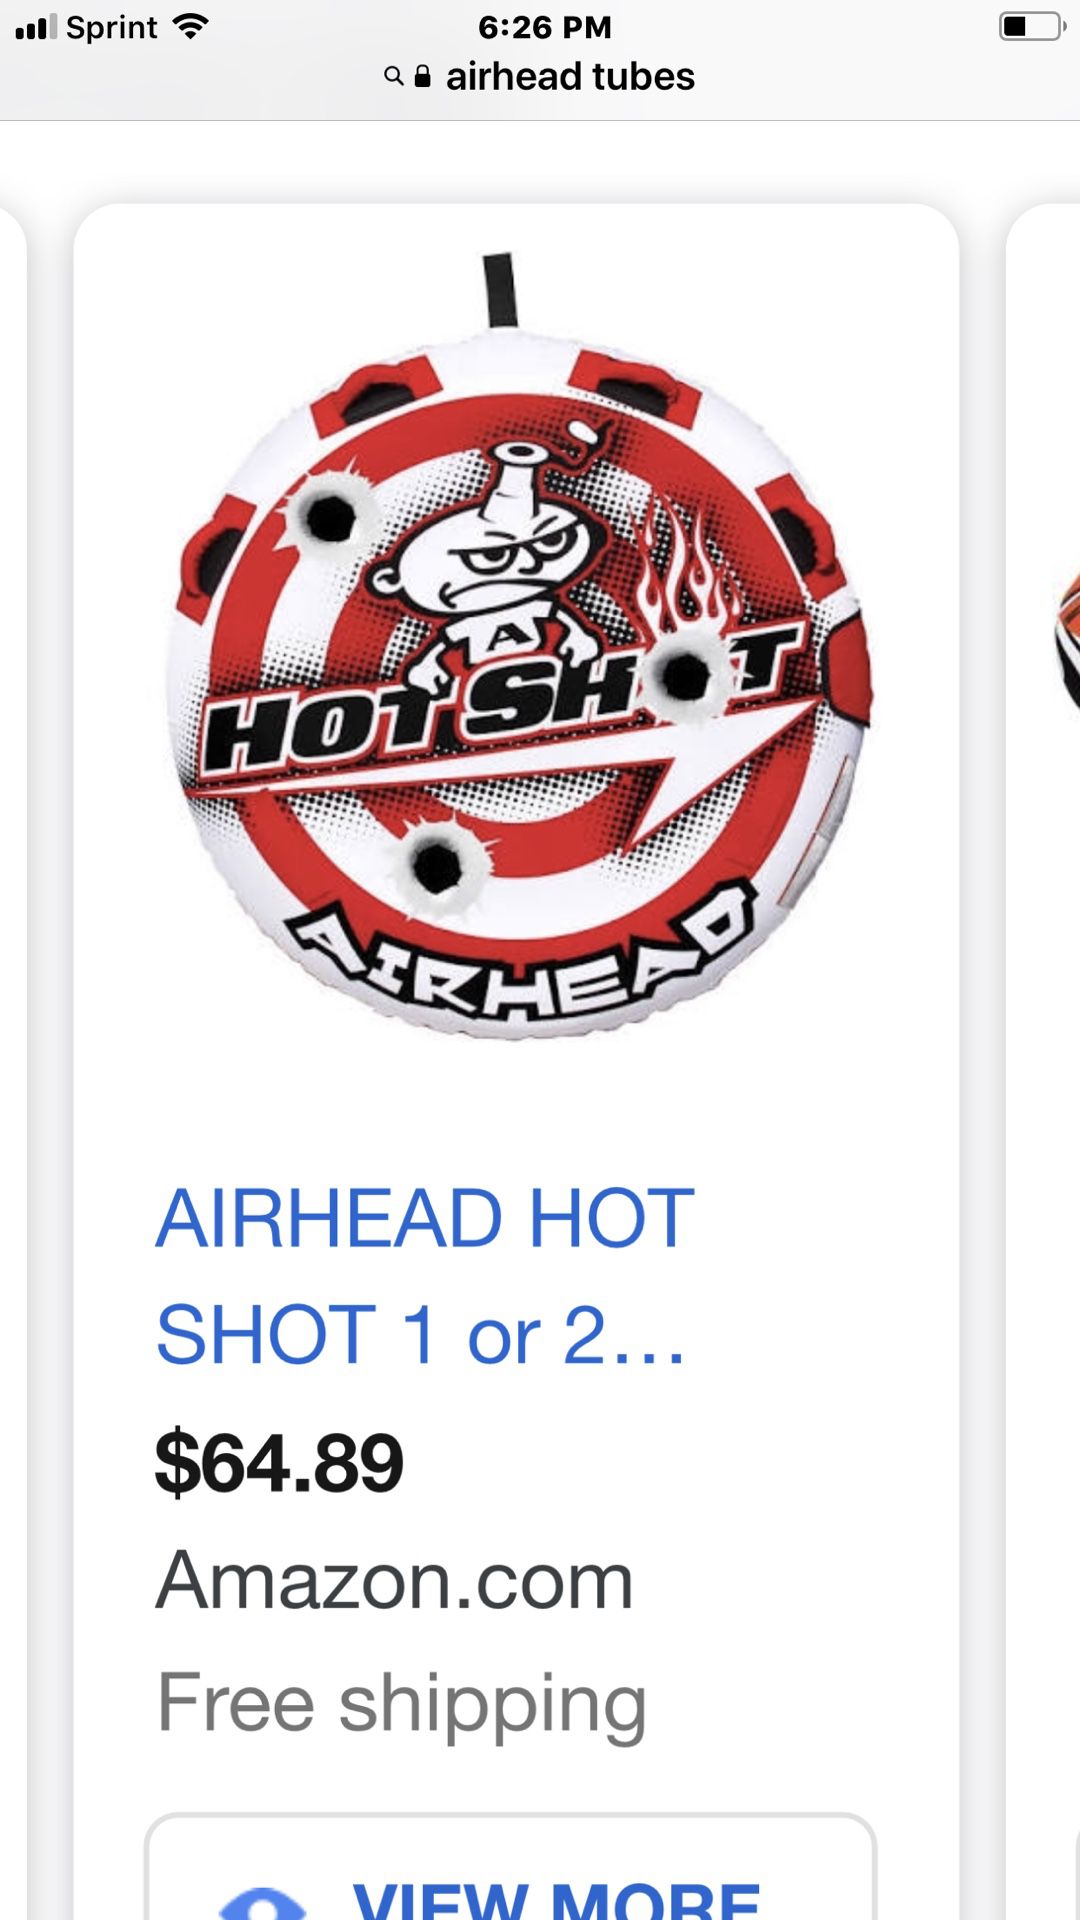 New Airhead hot Tub